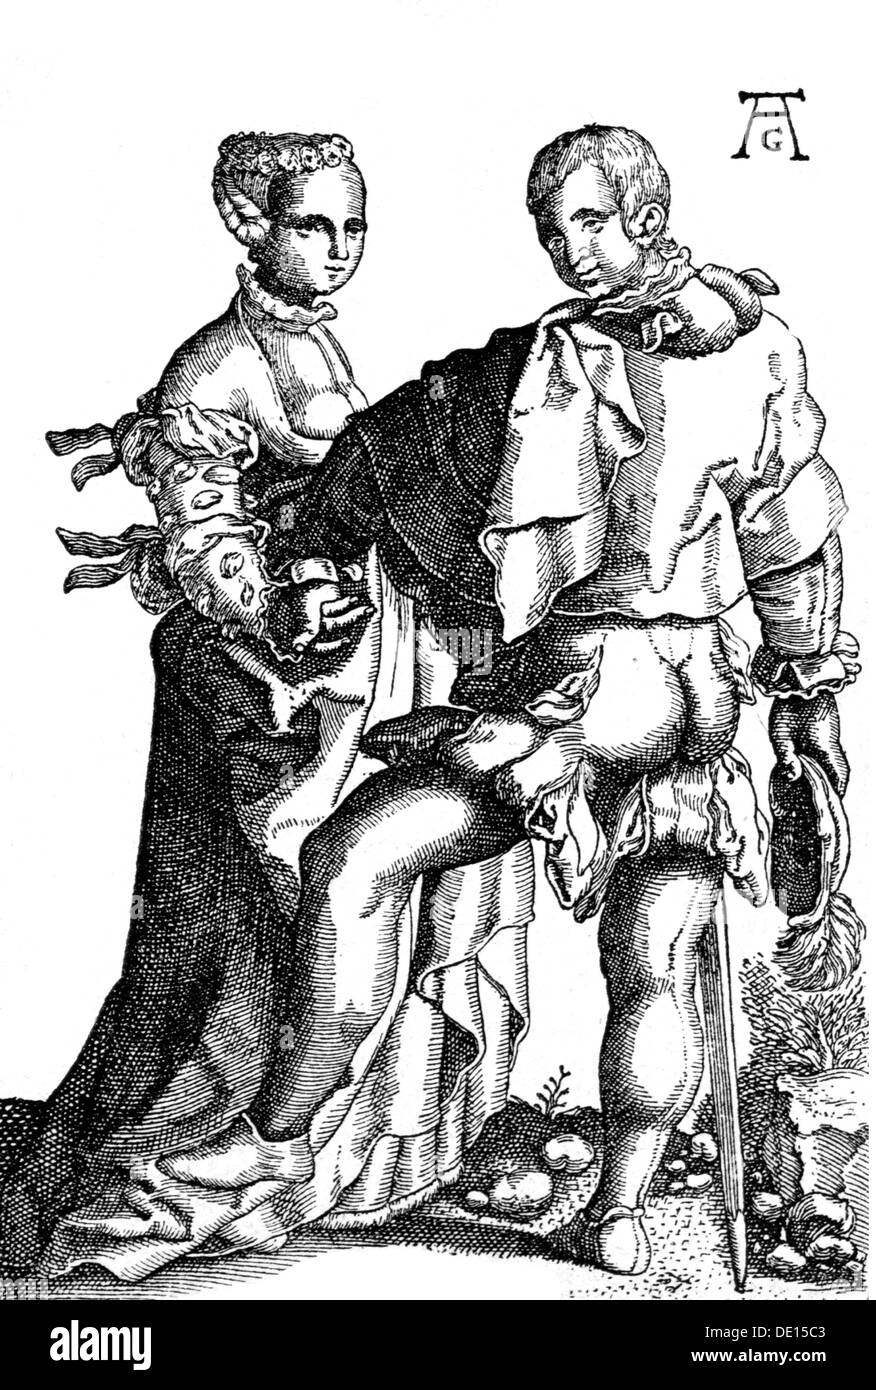 La mode, 16ème siècle, qu'on appelle 'Spanish autographiés', gravure sur cuivre de Heinrich Aldegrever (1502 - 1555 / 1561), 16e siècle, l'artiste n'a pas d'auteur pour être effacé Banque D'Images